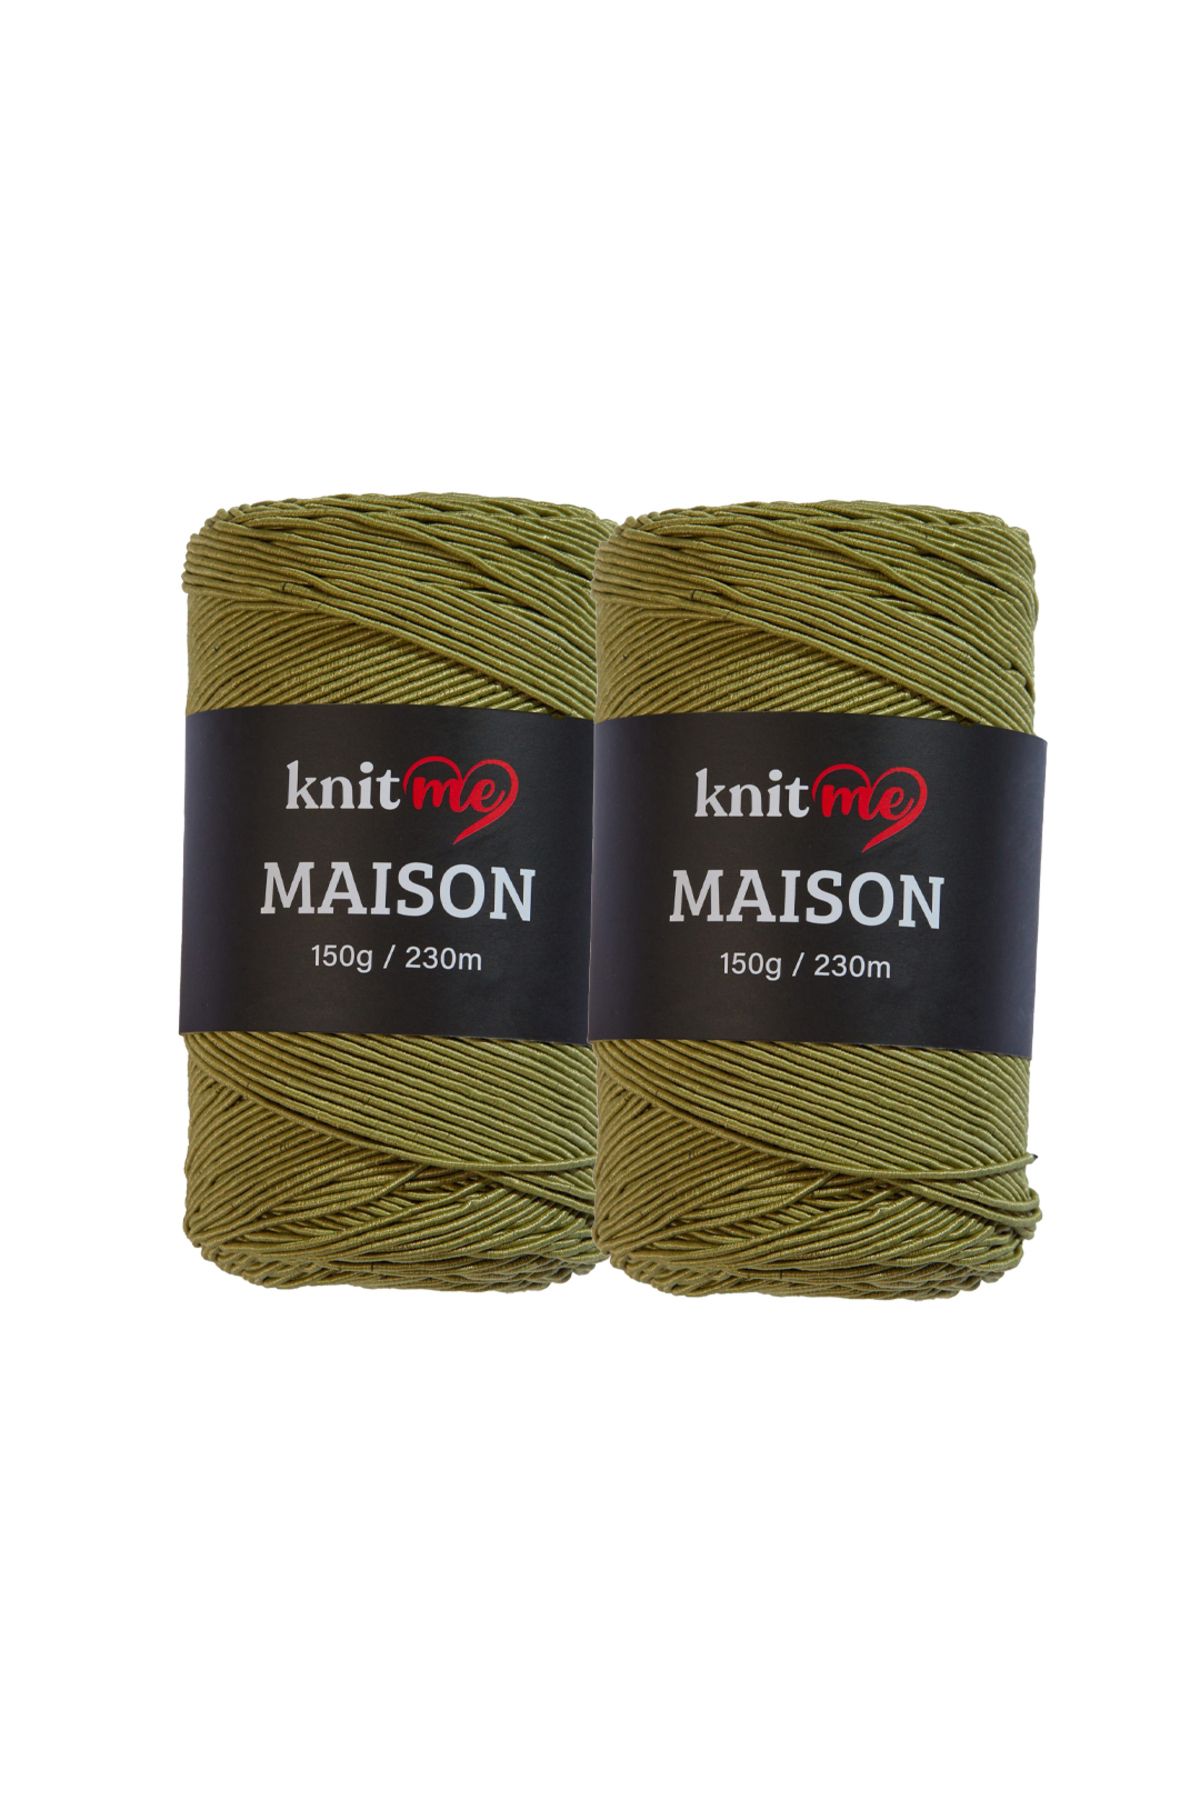 knitme Maison Supra 2'er Adet , 150'er Gram , 230m , El Örgü Ipi